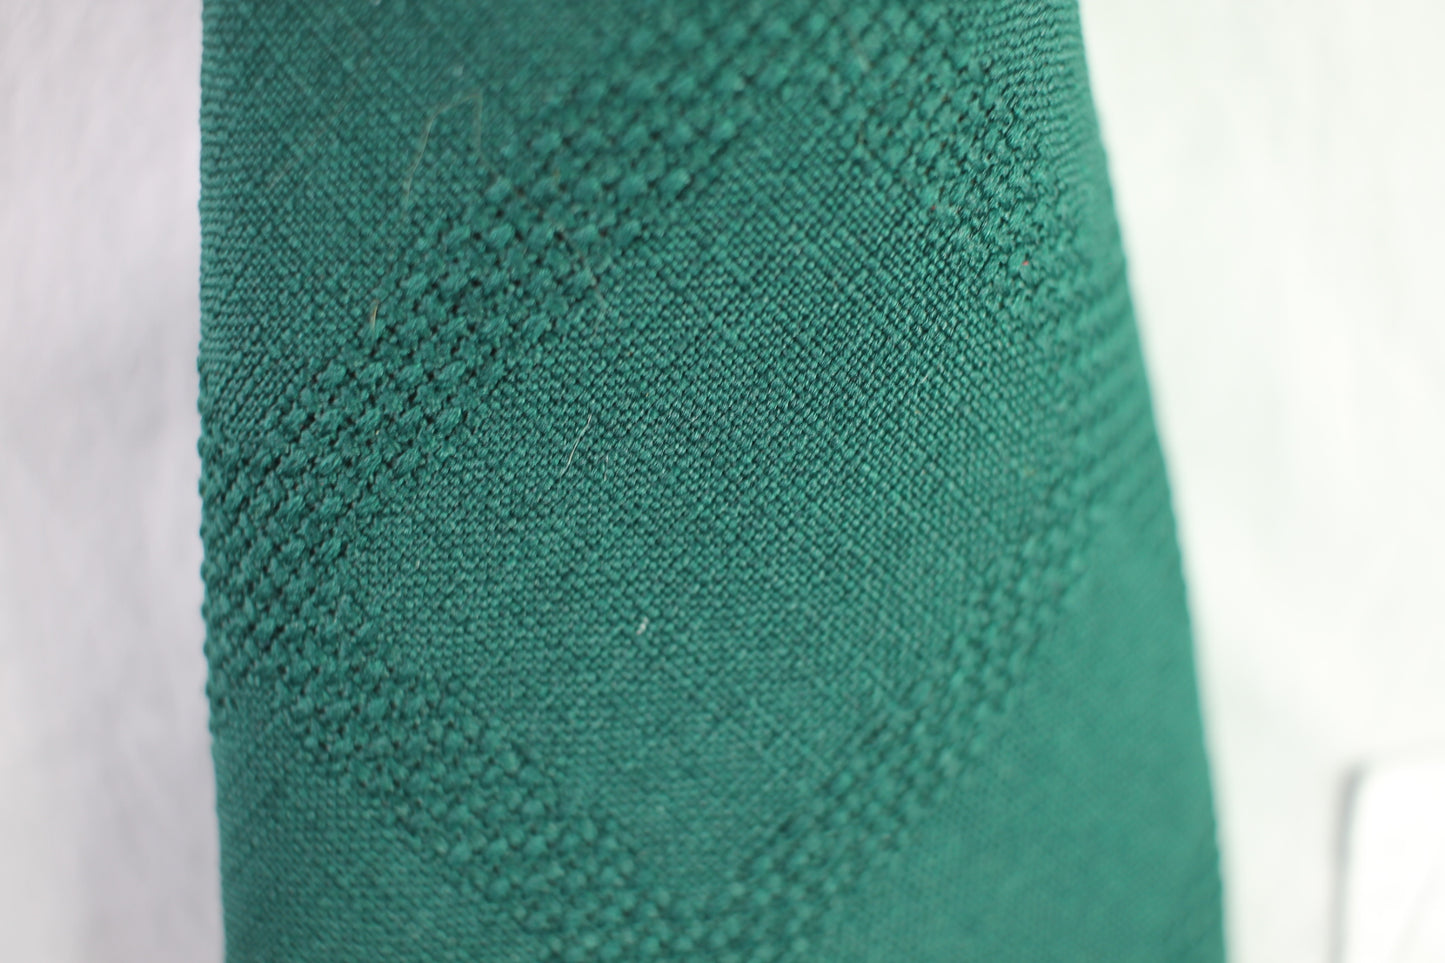 Vintage Fruit of the Loom dark green textured pattern tie